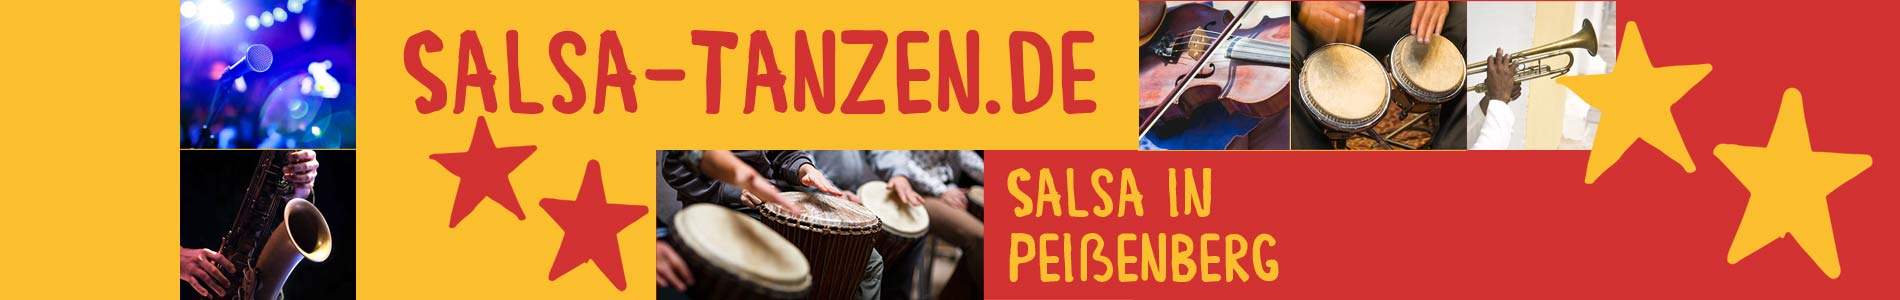 Salsa in Peißenberg – Salsa lernen und tanzen, Tanzkurse, Partys, Veranstaltungen